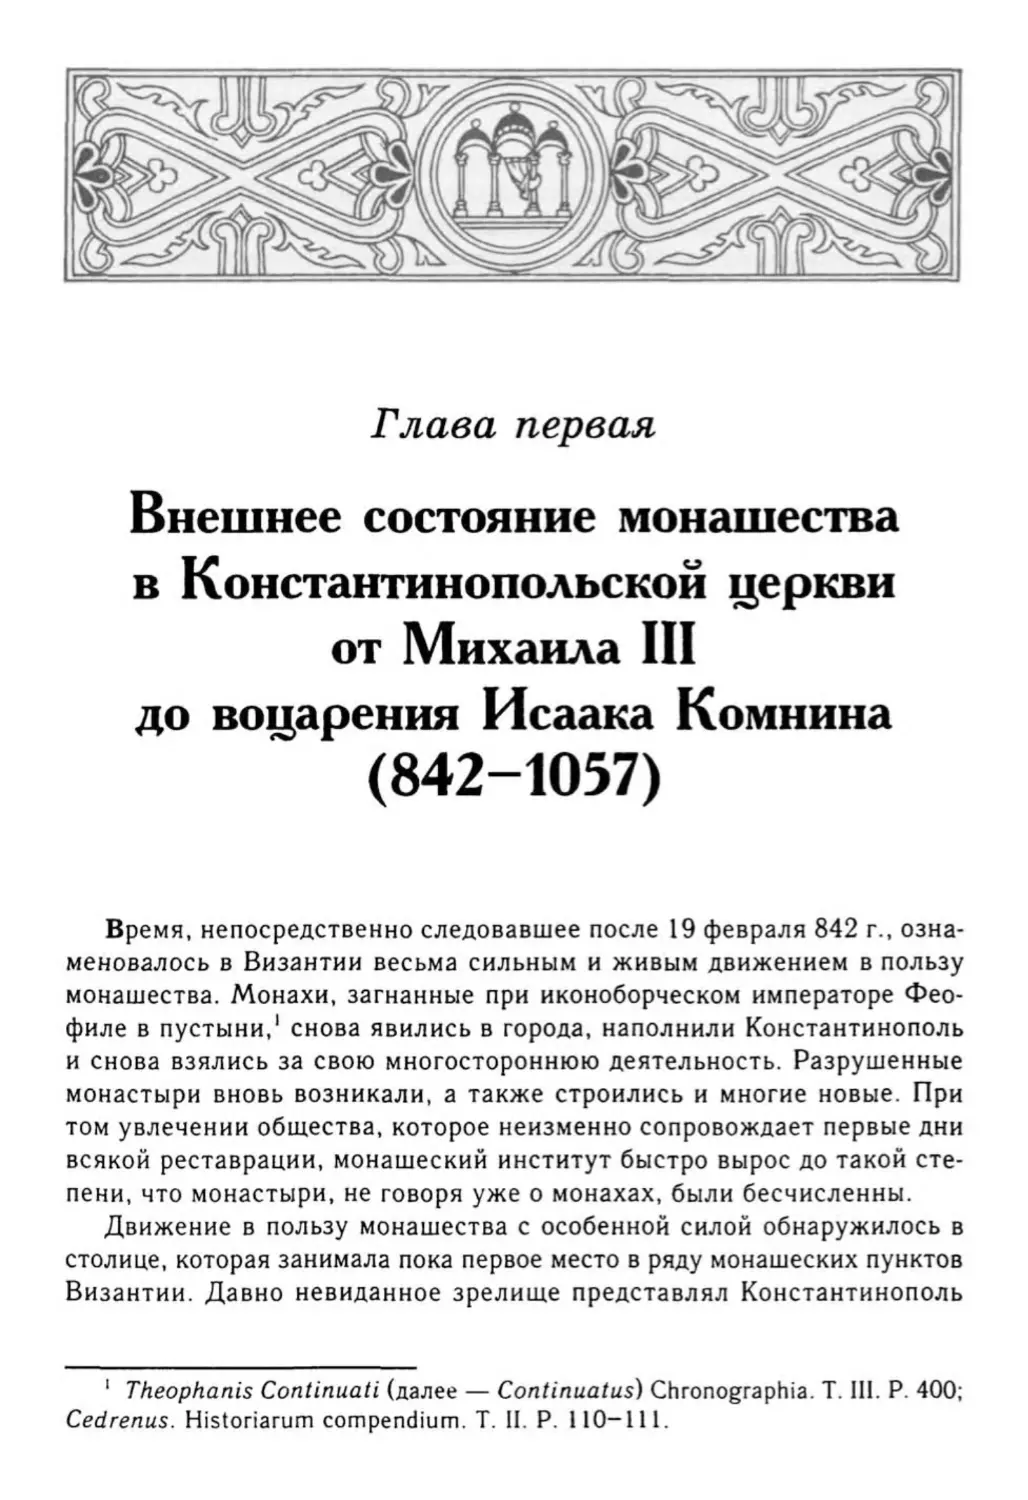 Глава первая. Внешнее состояние монашества в Константинопольской церкви от Михаила III до воцарения Исаака Комнина (842-1057)